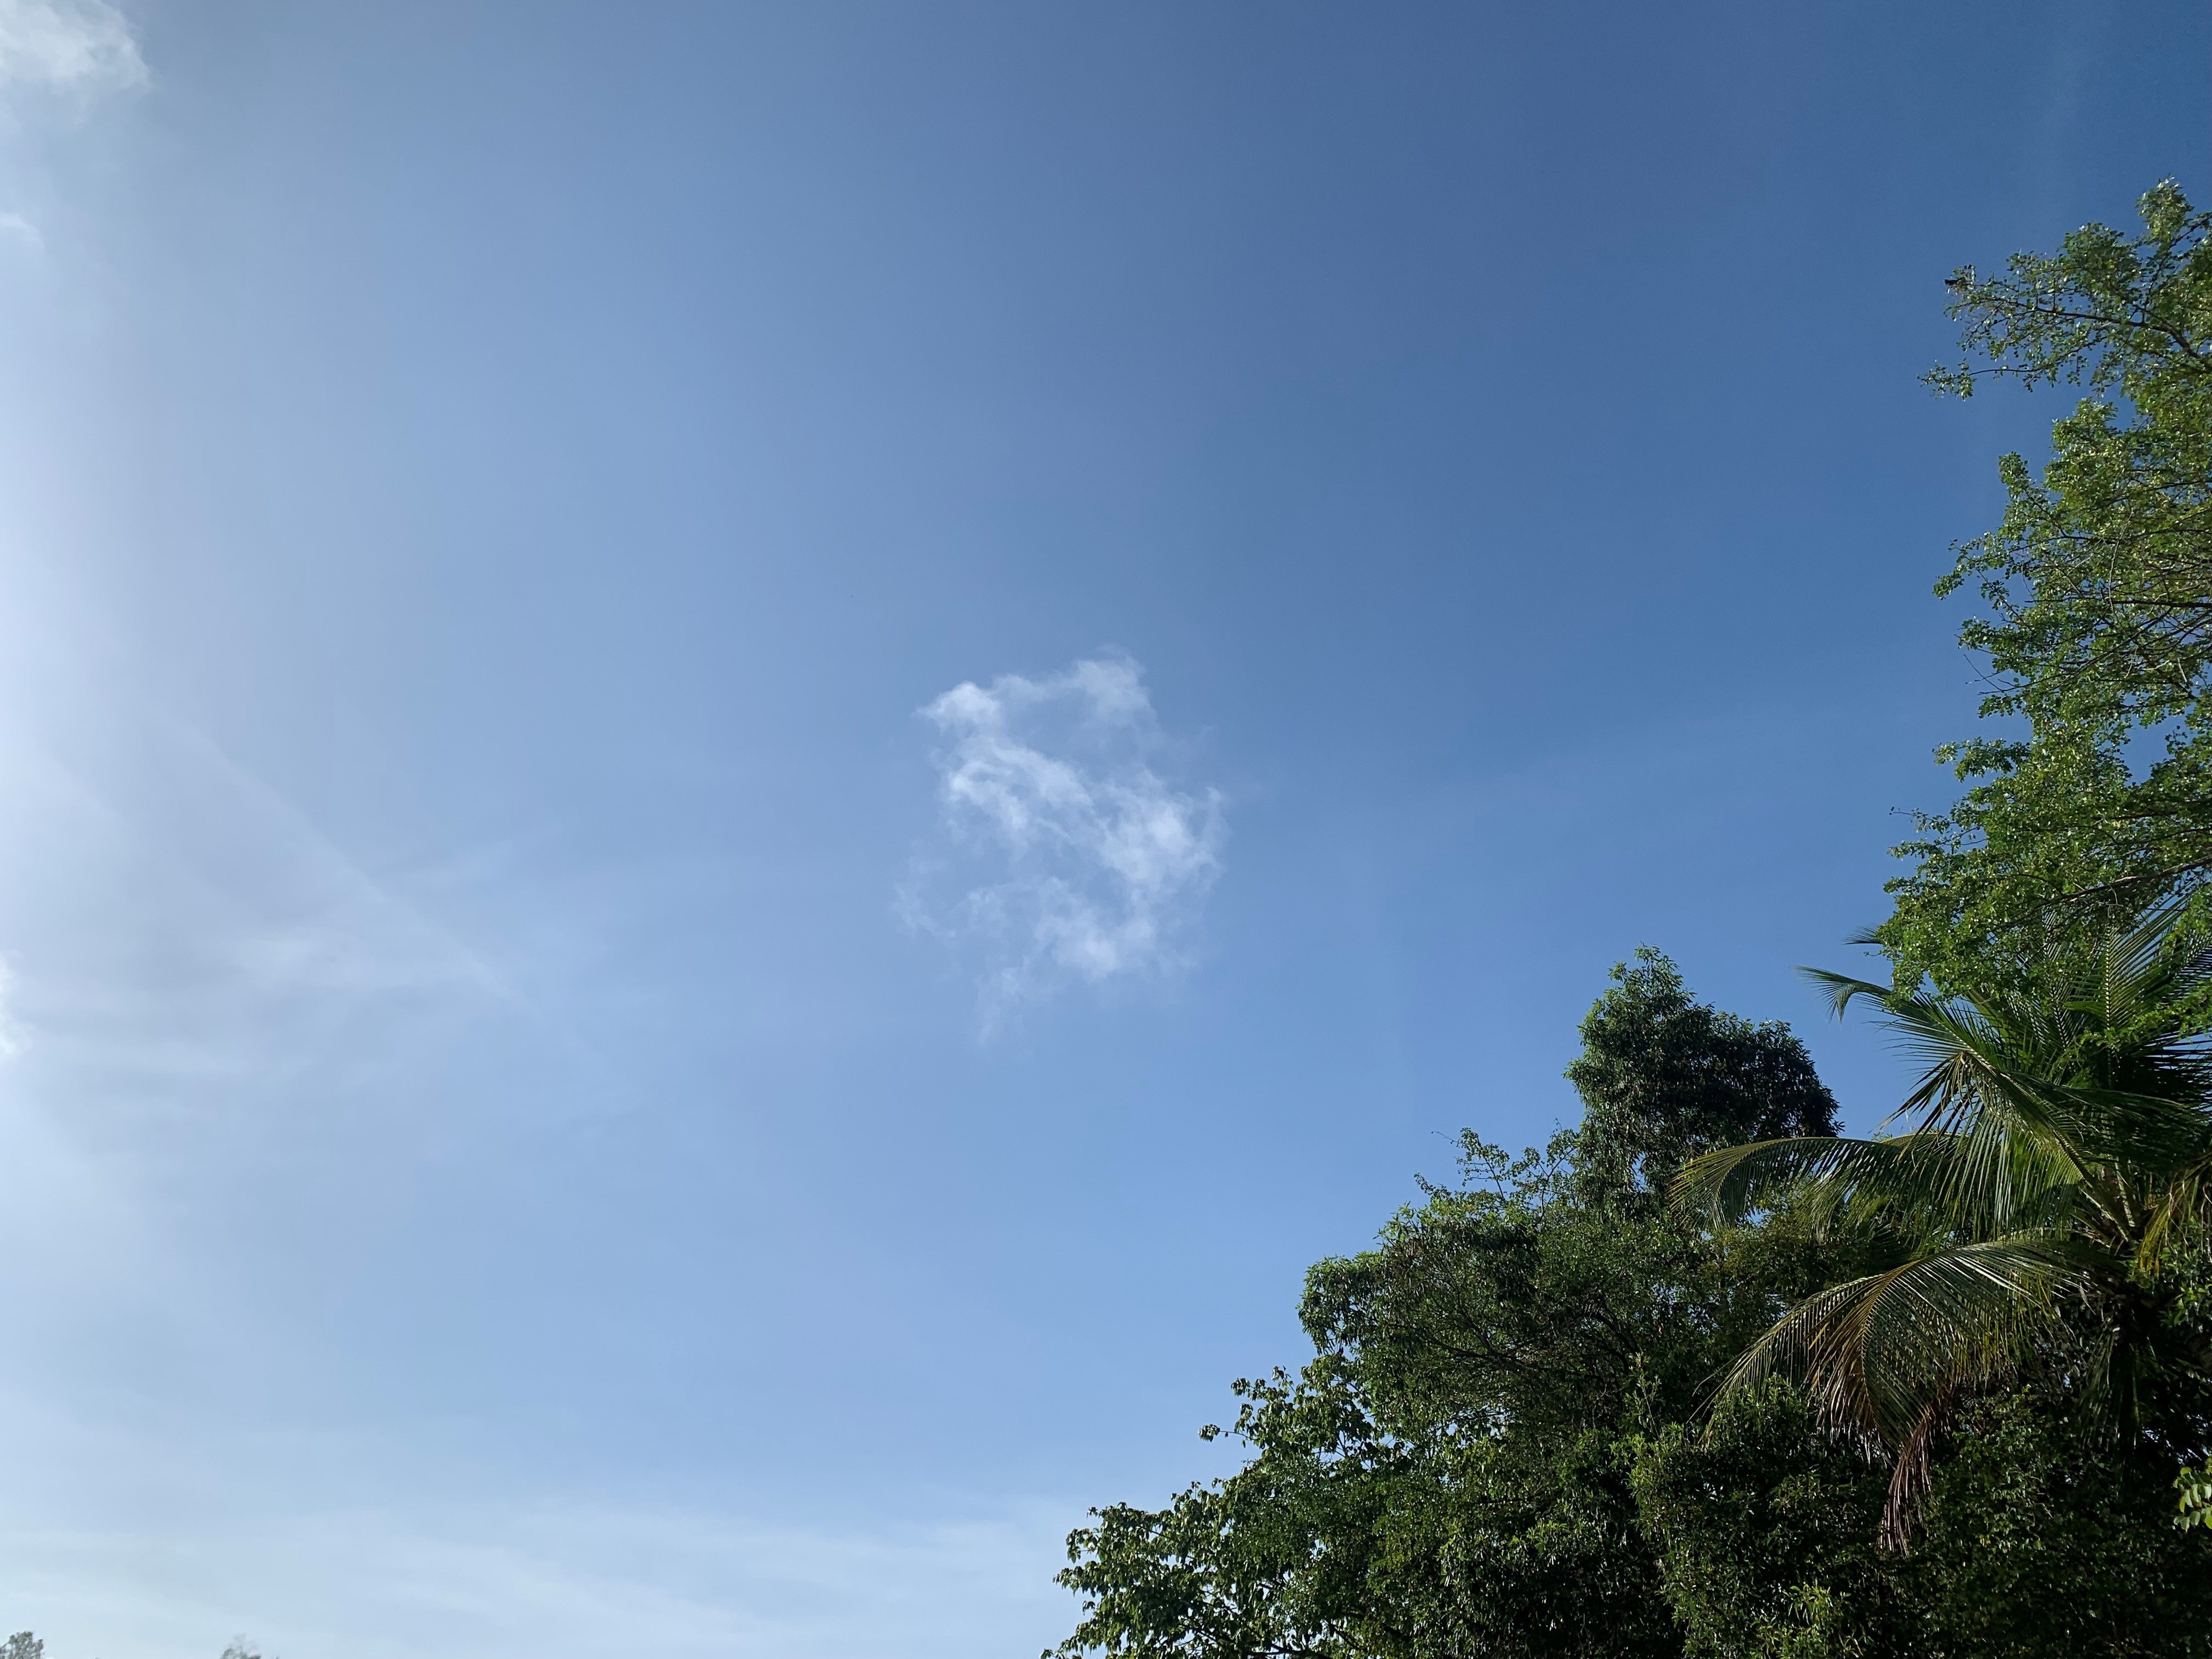     Météo : retour au vert en Guadeloupe

